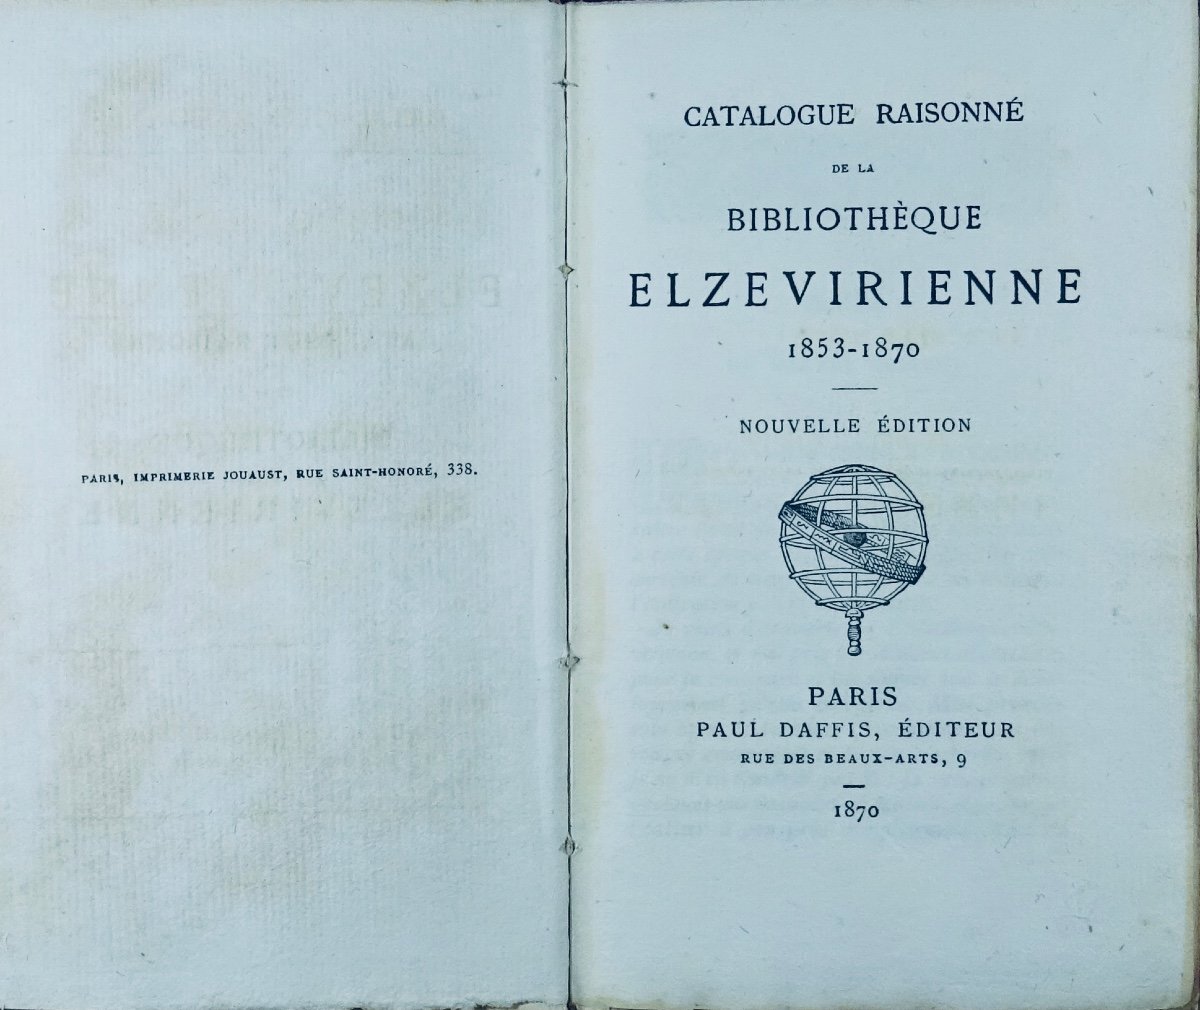 Catalogue Raisonné De La Bibliothèque Elzévirienne 1853-1870. Paris, Paul Daffis, 1870.